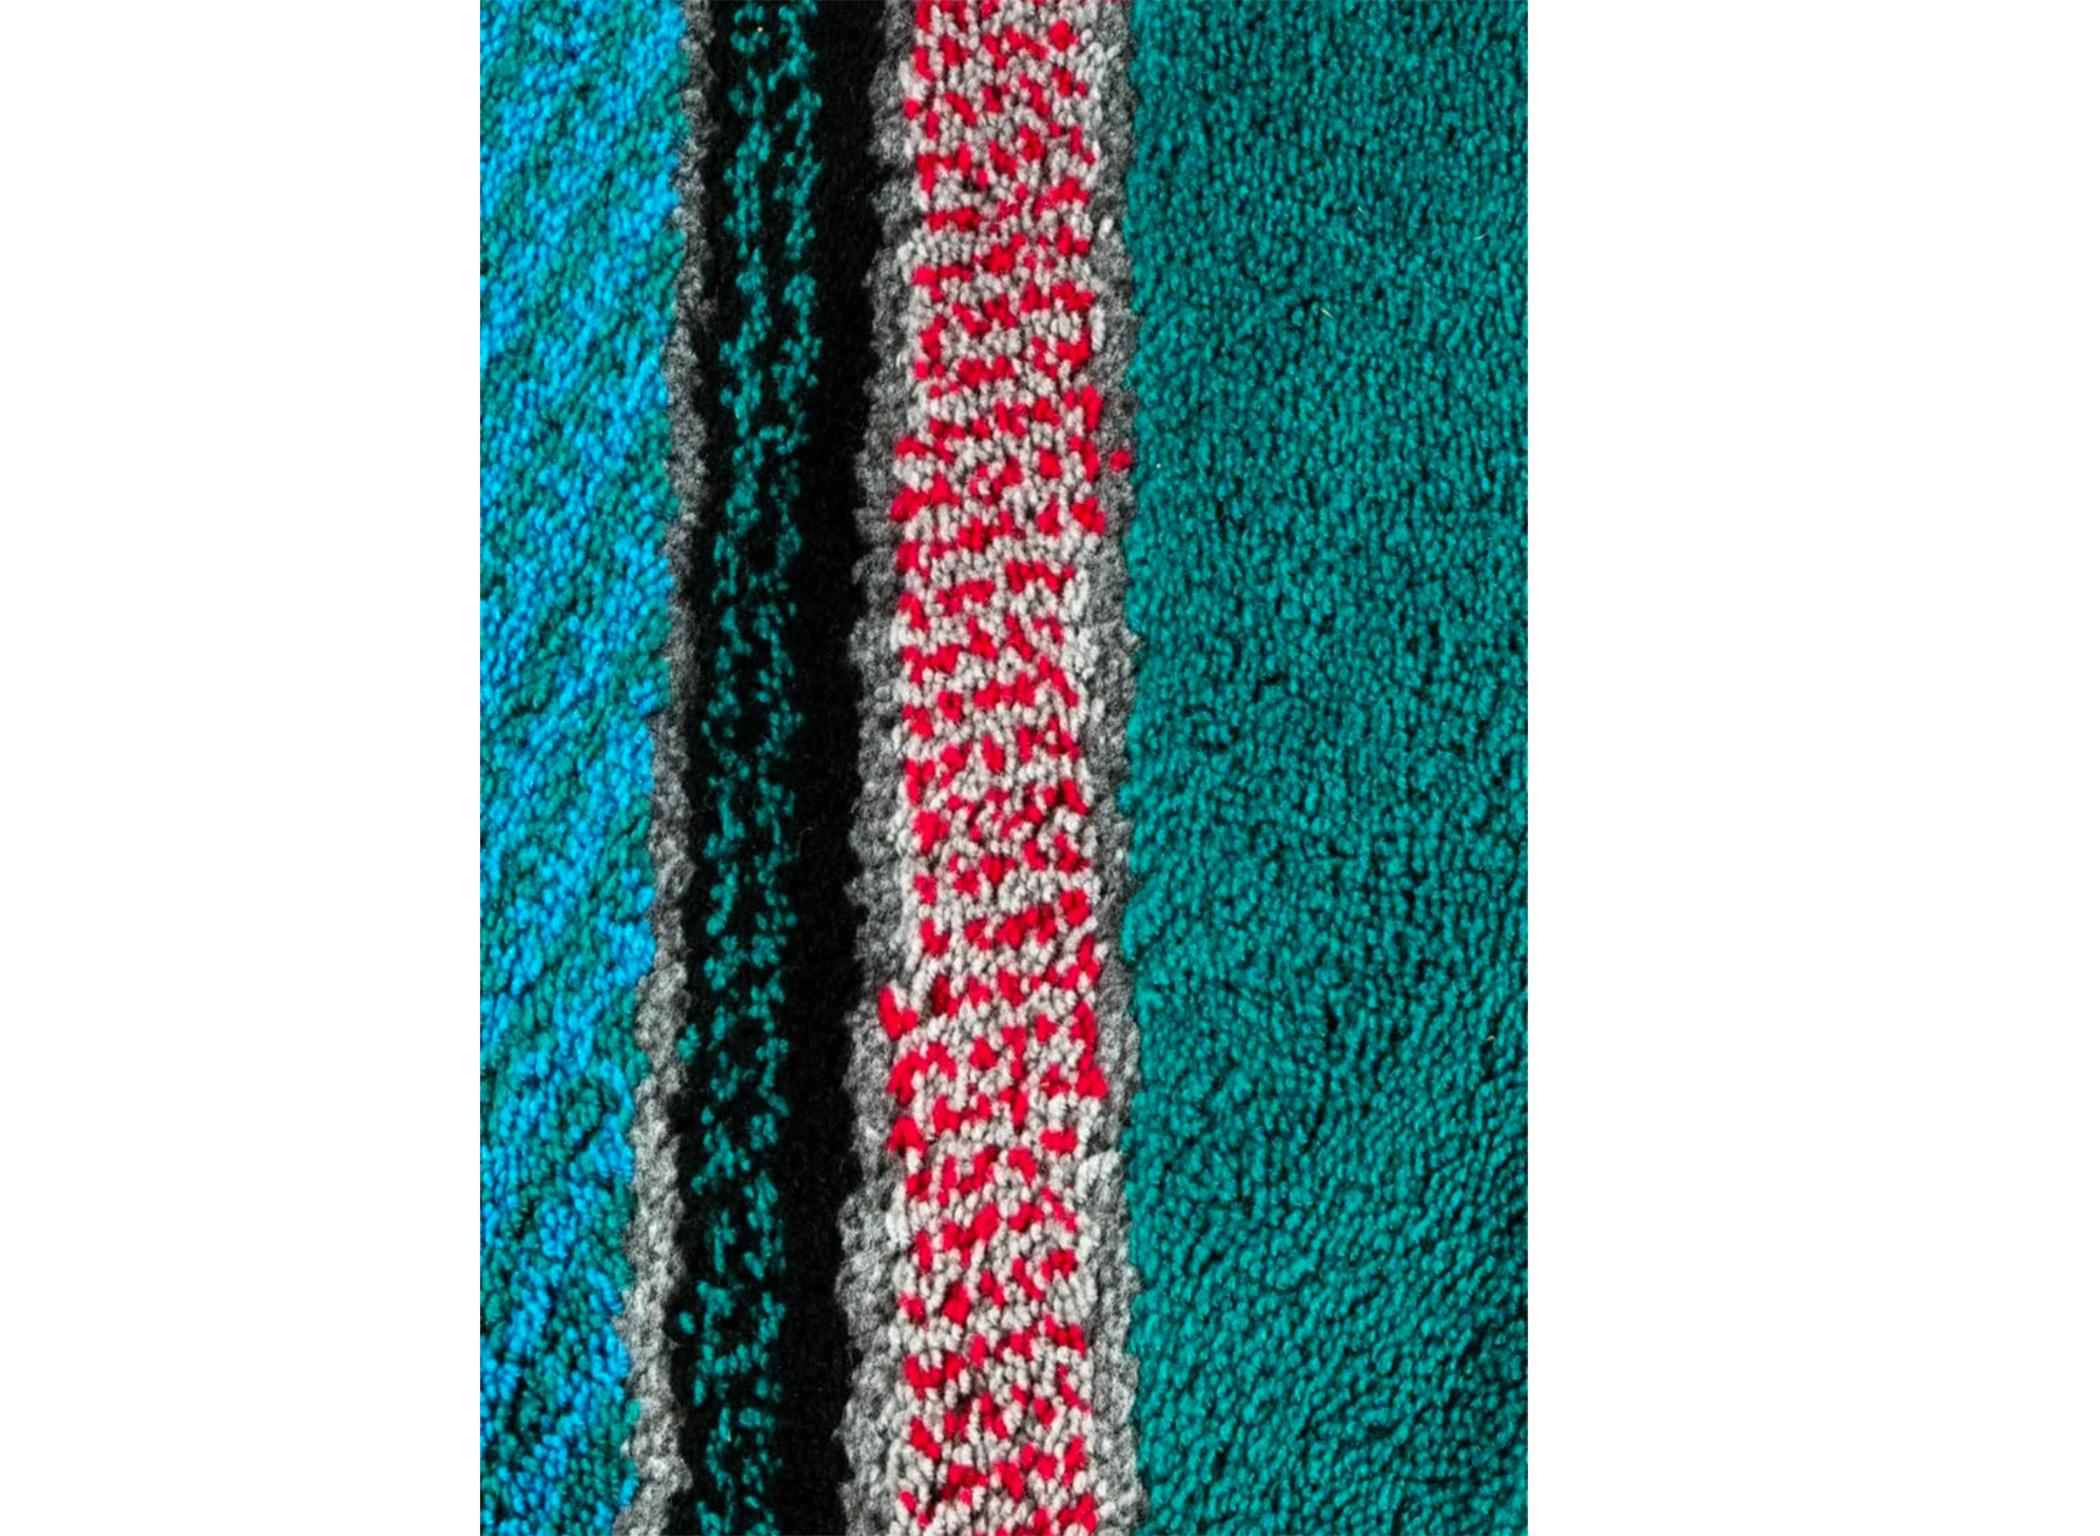 Postmoderner dickfloriger Teppich im Memphis-Stil von Gianni Erba für die Trend Collection'S der Home Decor Group. Etikettiert. Hergestellt in Italien um 1980. Guter Vintage-Zustand. Das Hotel liegt in Brooklyn NYC.

Abmessungen: L 87,5